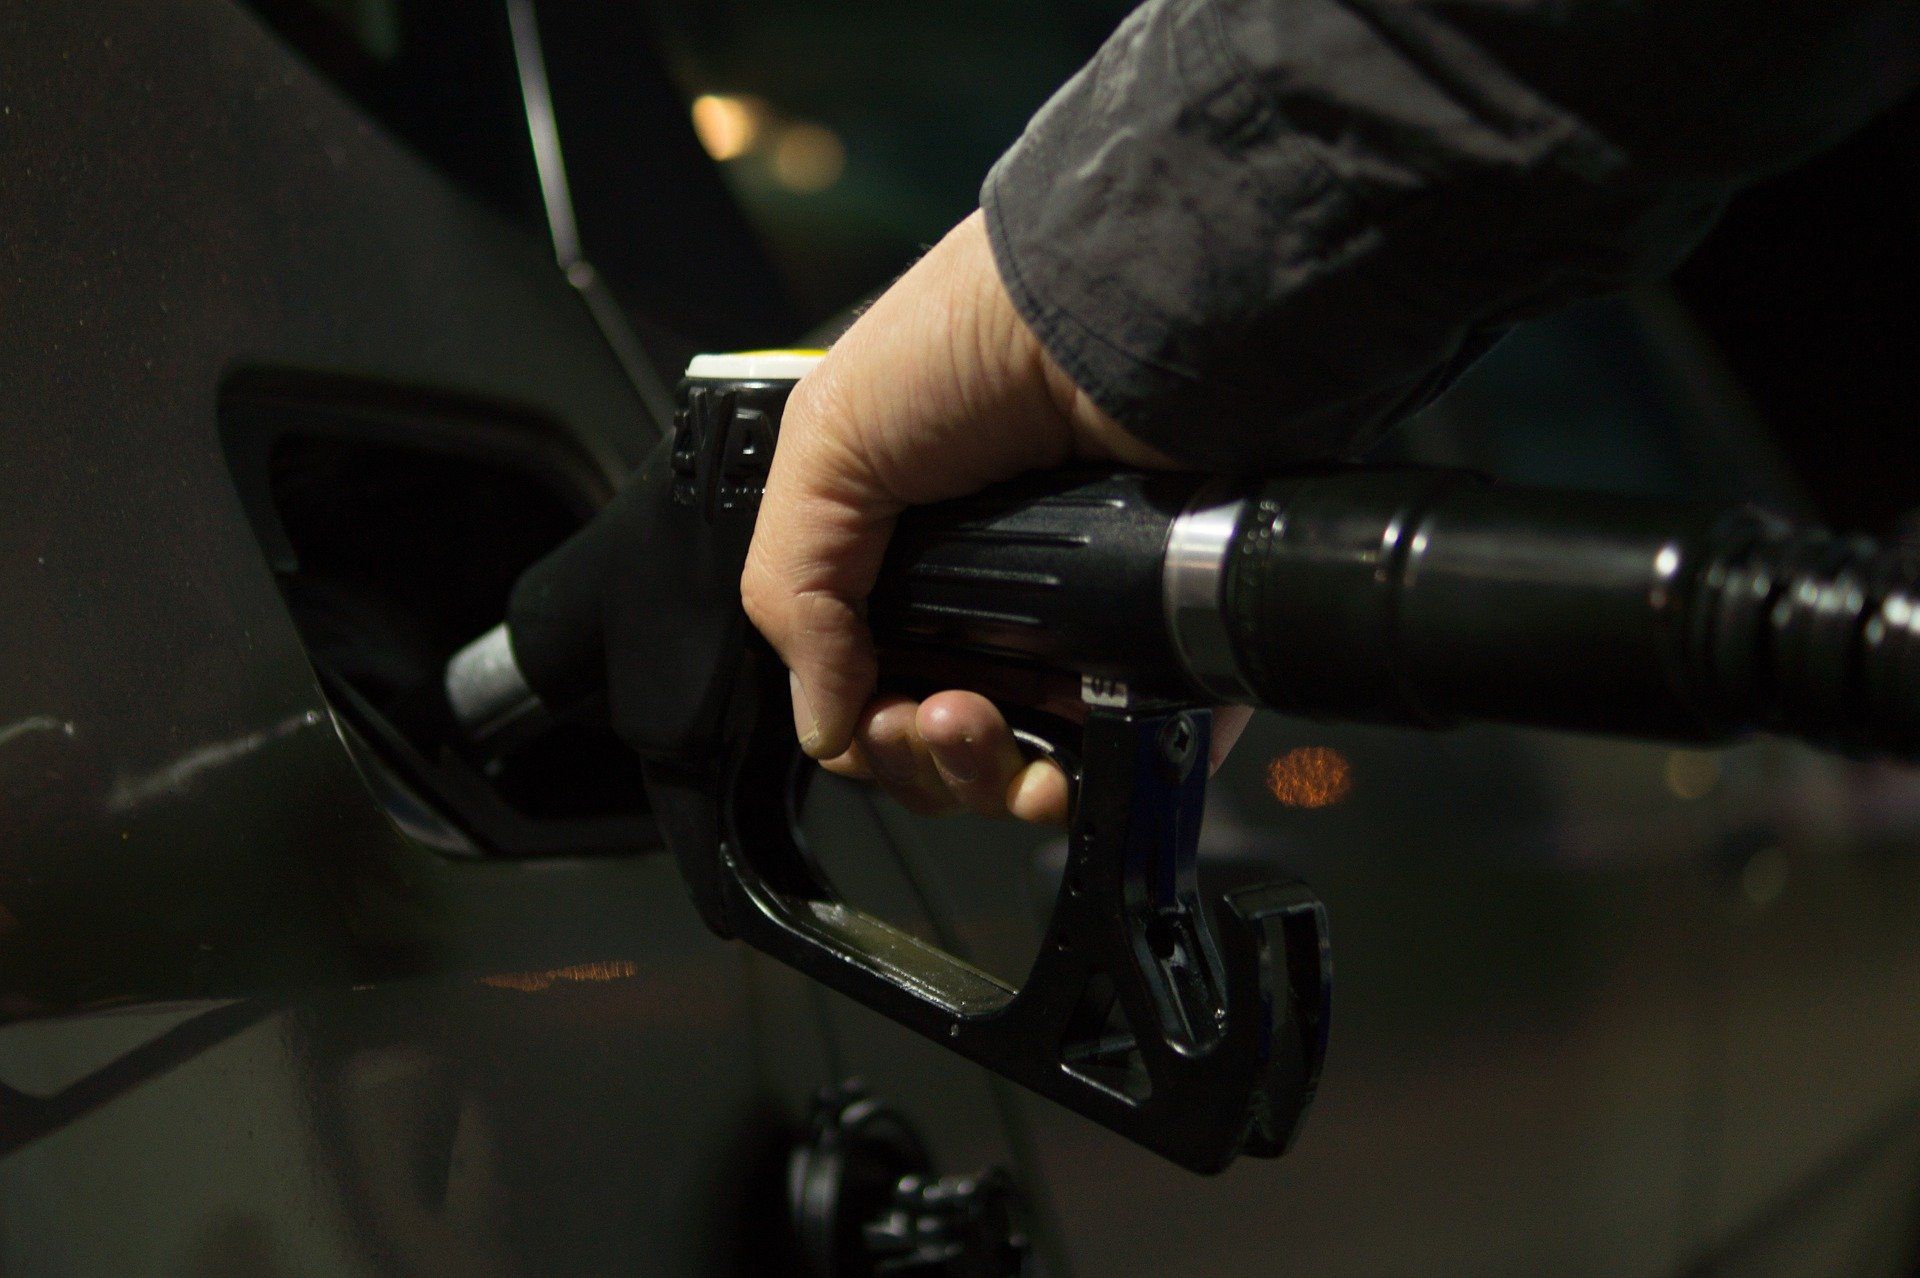 Fuel price June 1, 2022: Petrol Rs 96.72, diesel Rs 89.62 in Delhi